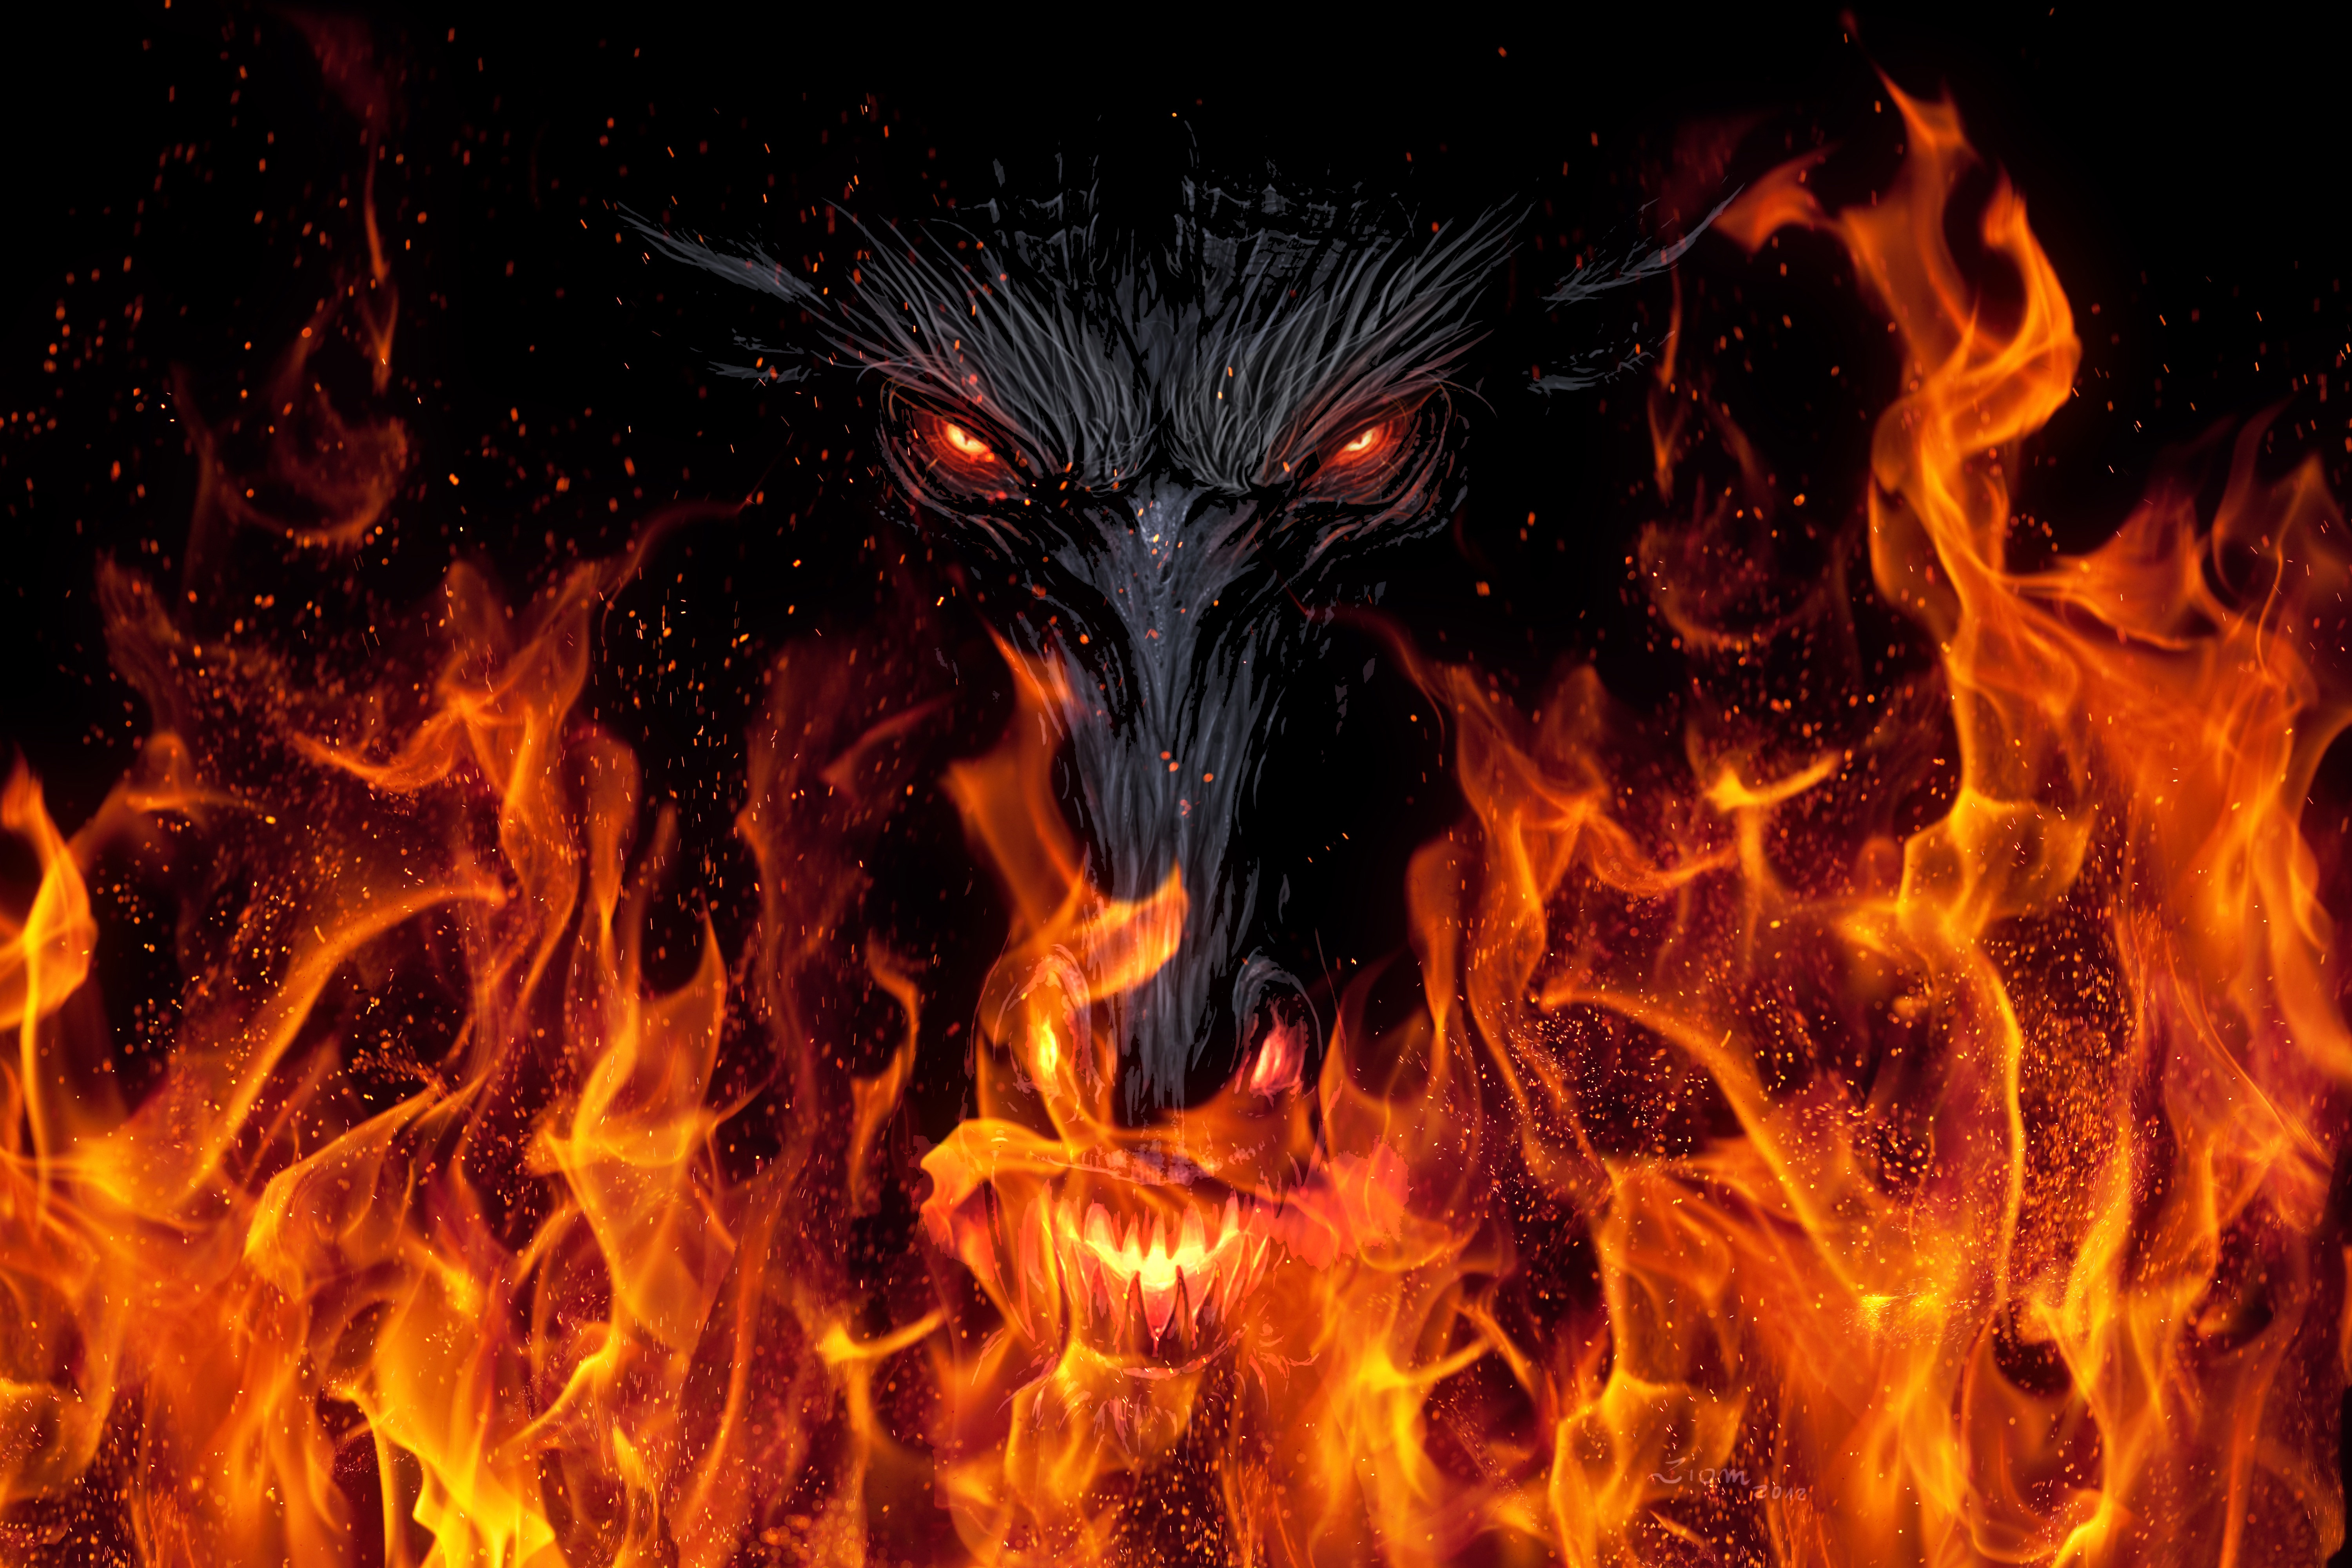 Dragon Demon Devil 5k, HD Artist, 4k Wallpapers, Images, Backgrounds